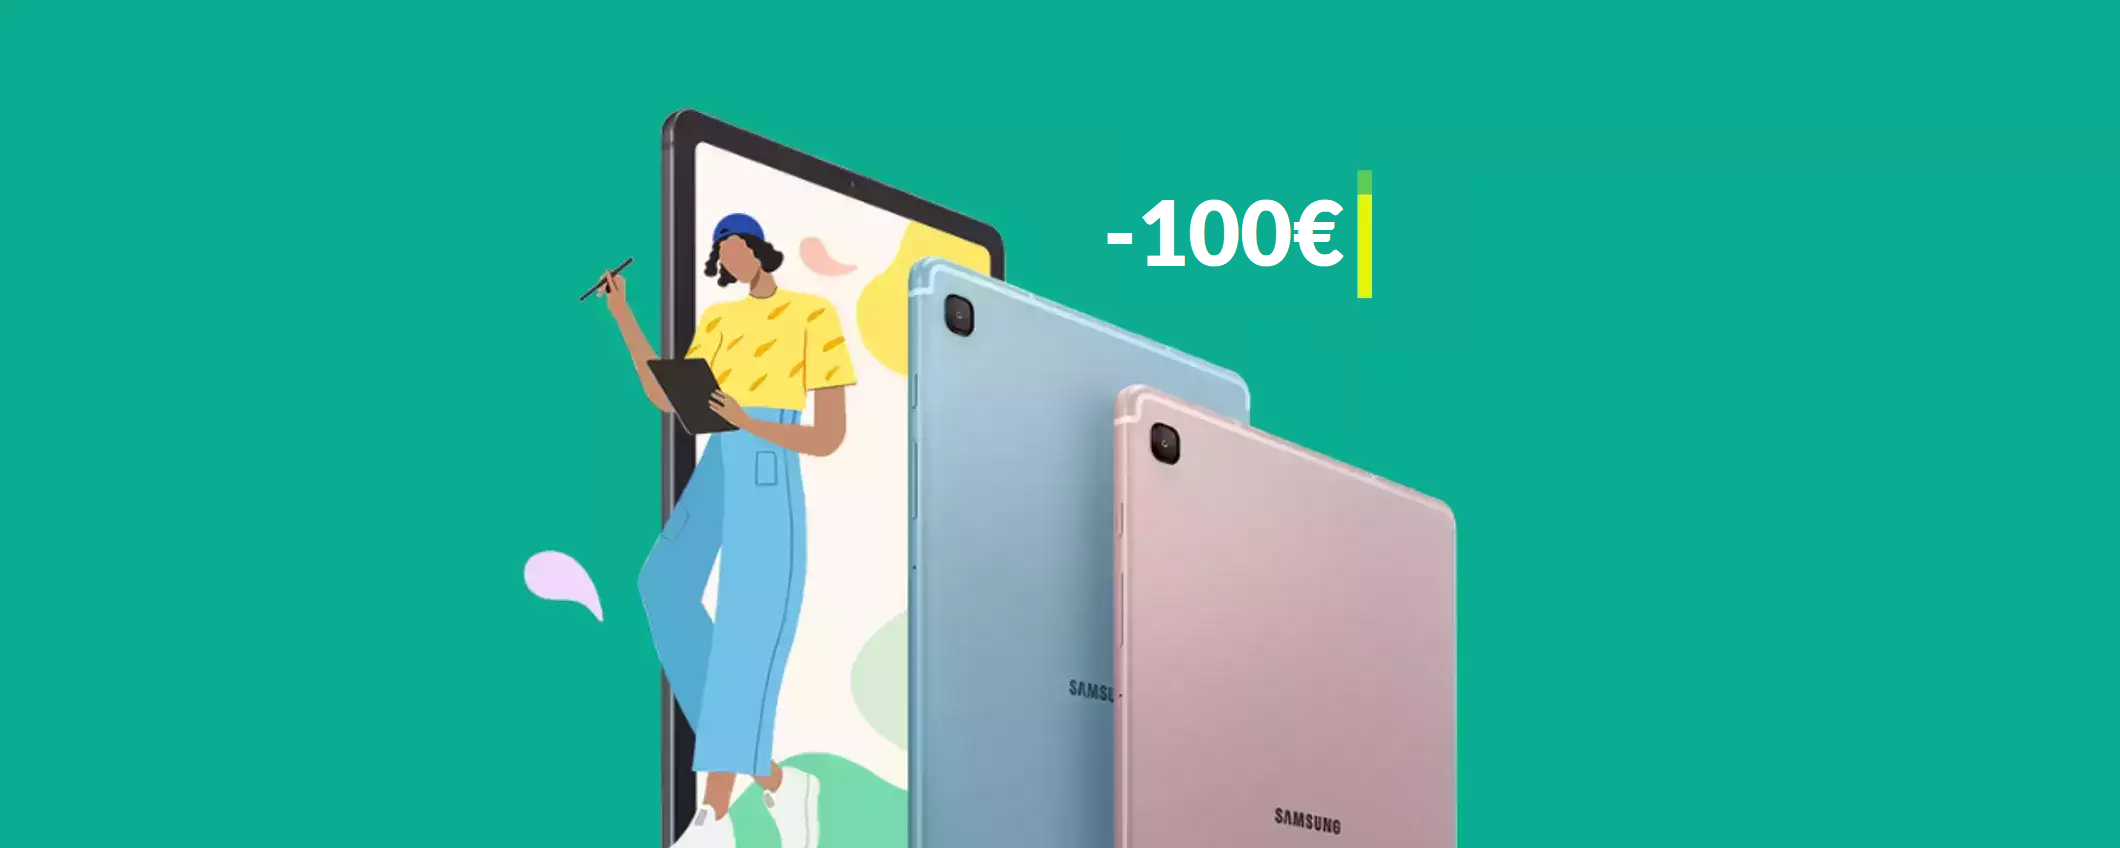 Imperdibile tablet Samsung con S Pen: c'è uno SCONTO di 100€